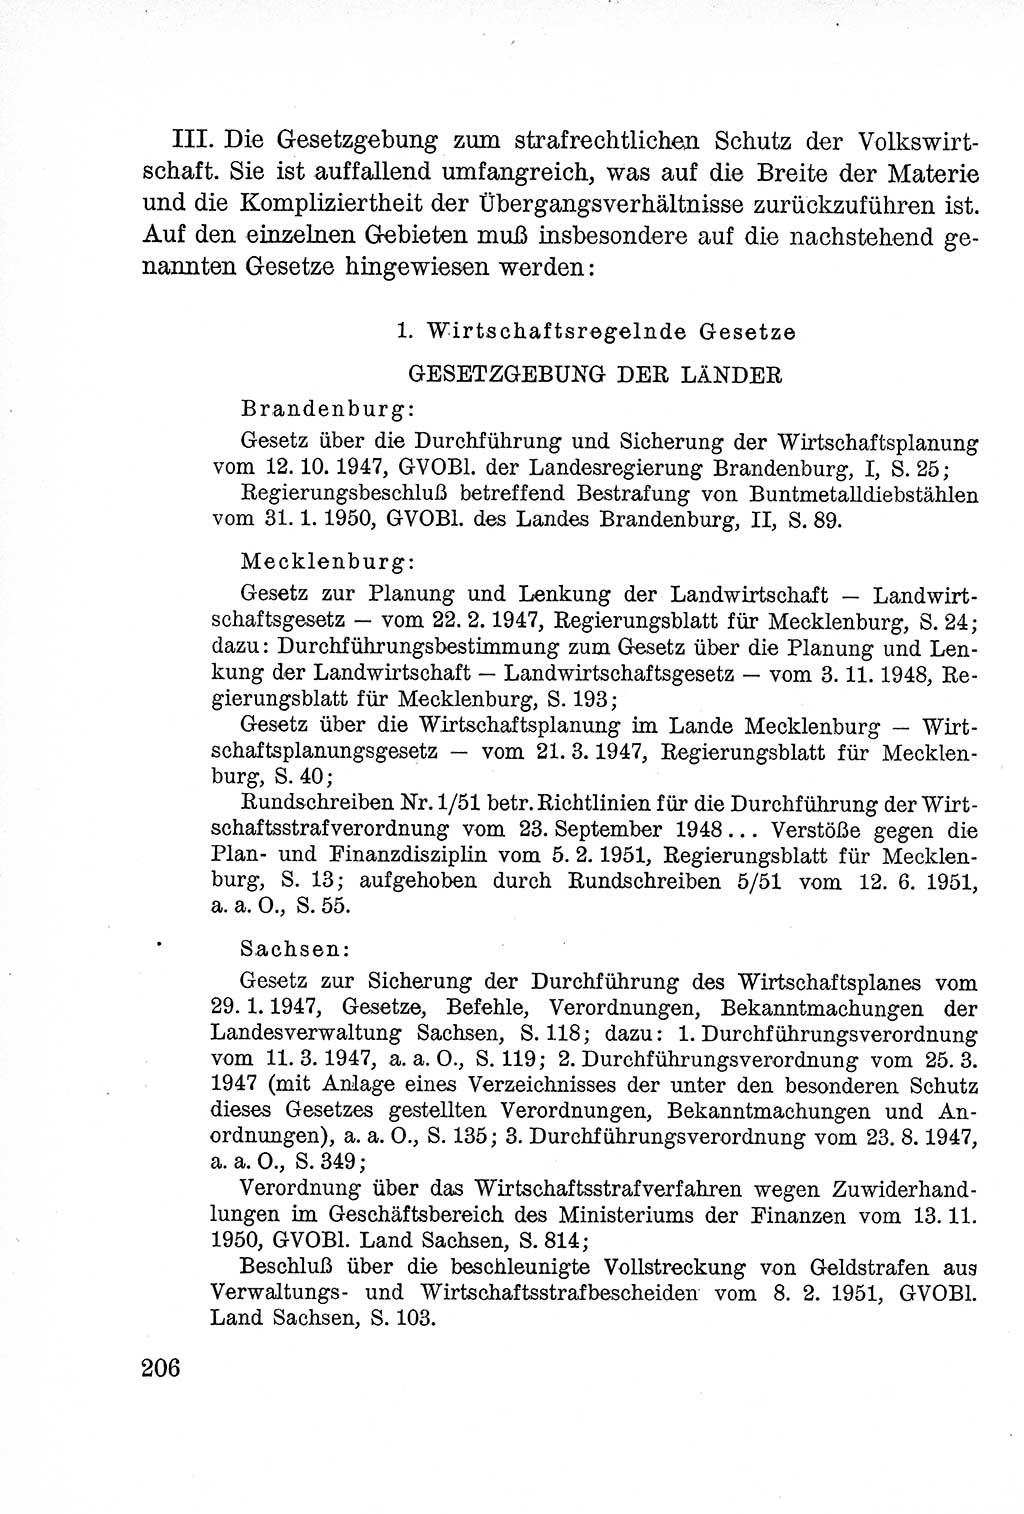 Lehrbuch des Strafrechts der Deutschen Demokratischen Republik (DDR), Allgemeiner Teil 1957, Seite 206 (Lb. Strafr. DDR AT 1957, S. 206)